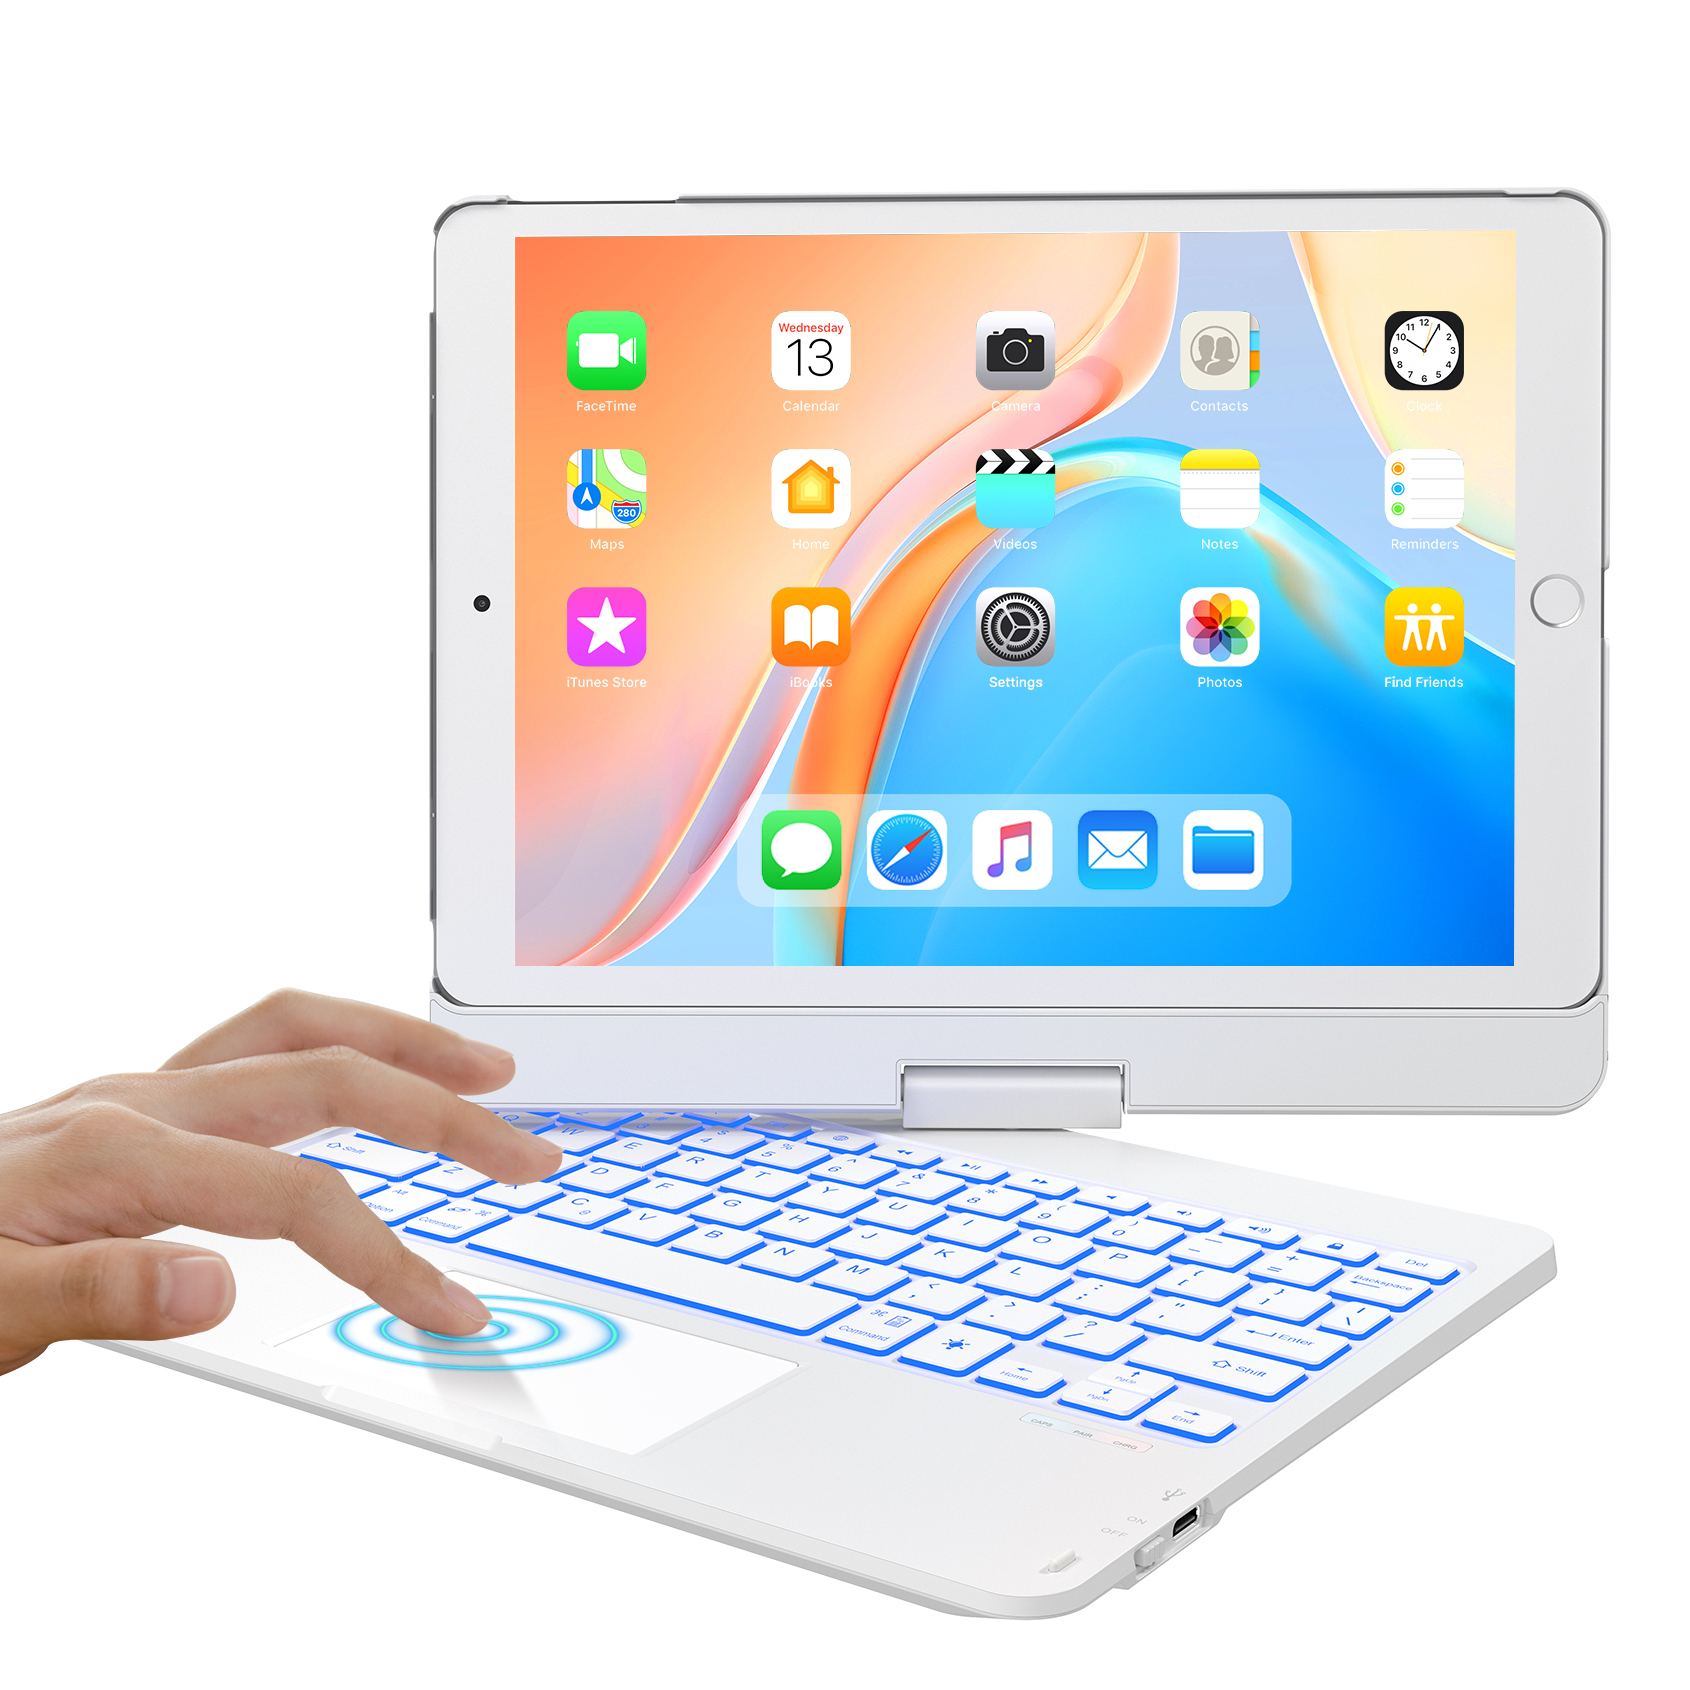 iPad 7世代 キーボード ケースiPad mini6 キーボード 8.3インチ タッチパッド付き 2021 2020 2019モデル]Bluetooth キーボードカバー 7色バックライト付き 360度回転式180º裏返す操作 反転可能 iPad 10.2 iPad Air3 Pro 10.5 mini6対応